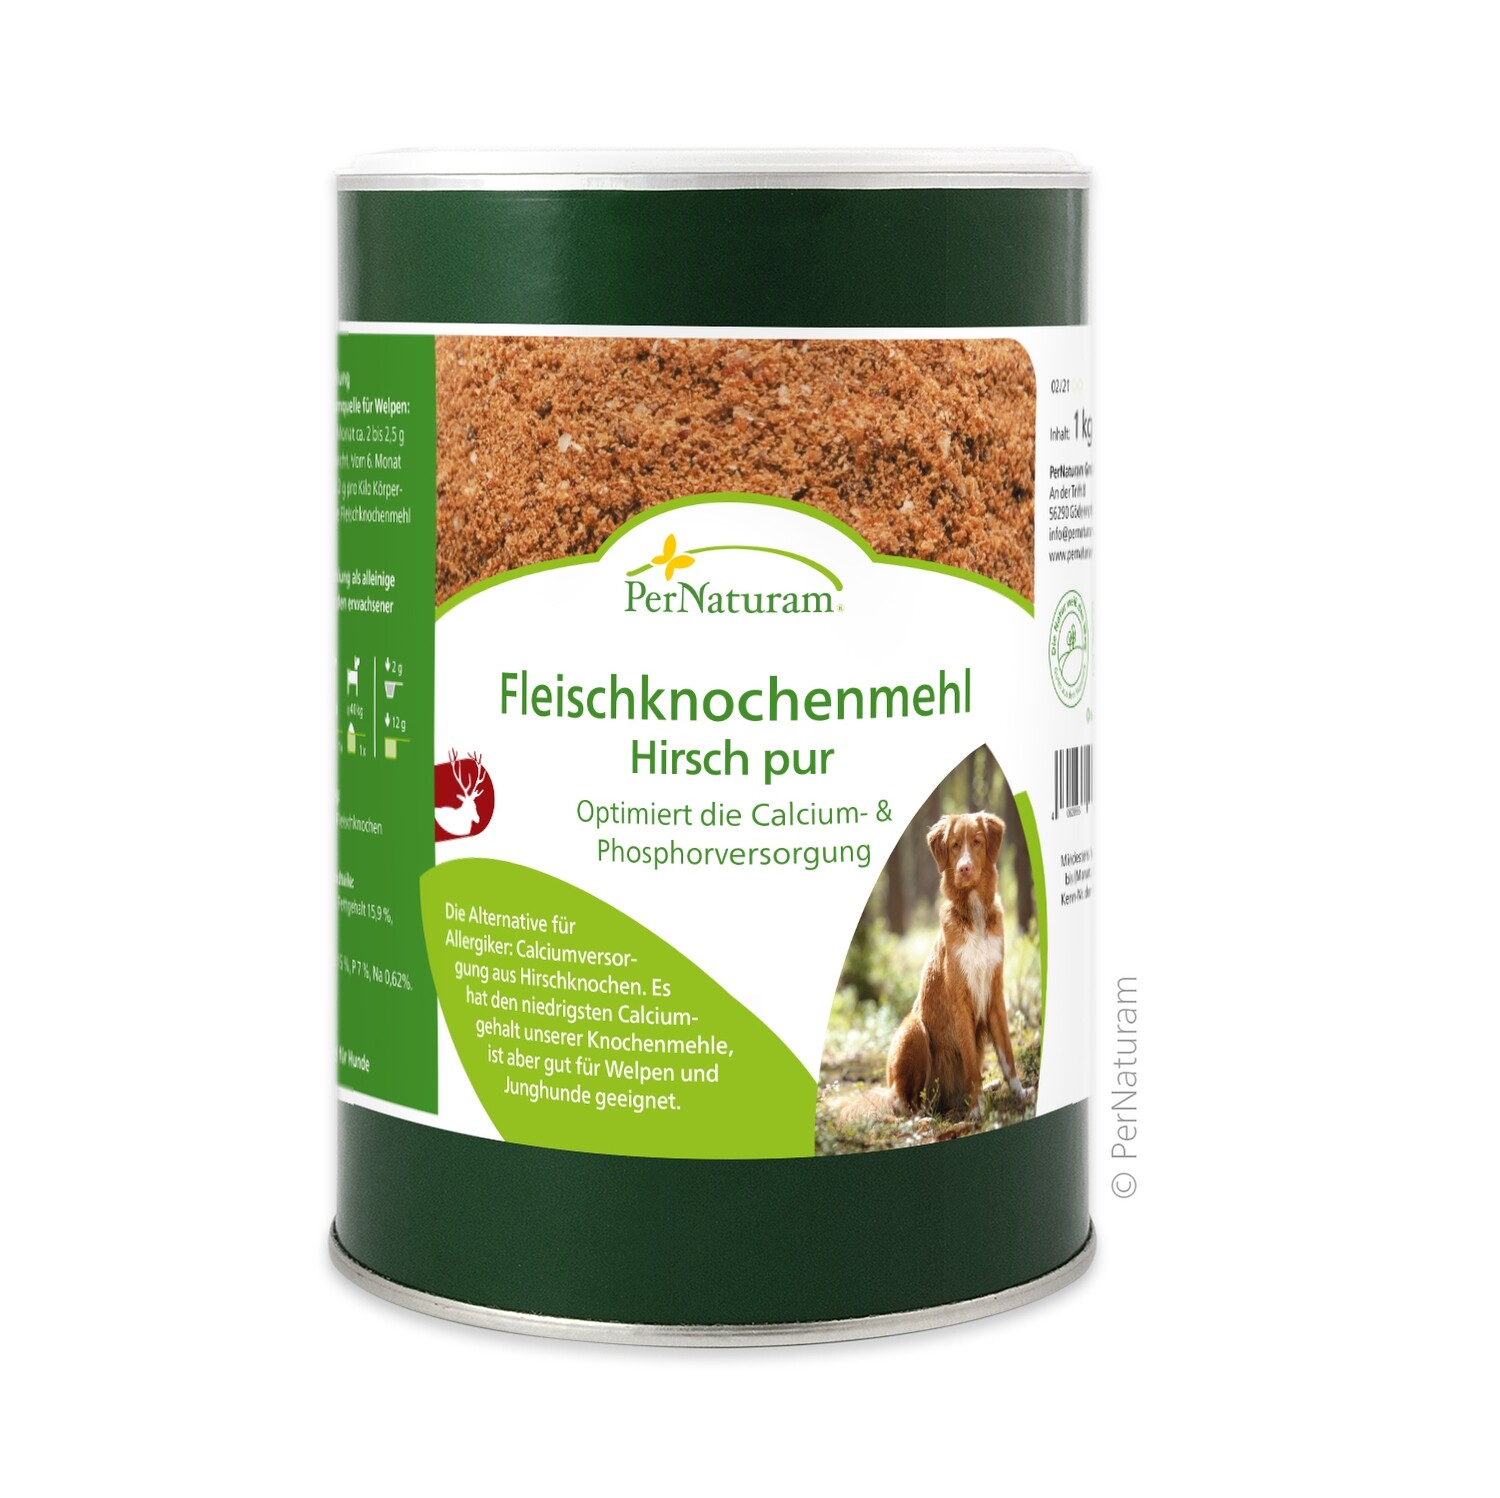 Fleischknochenmehl Hirsch pur